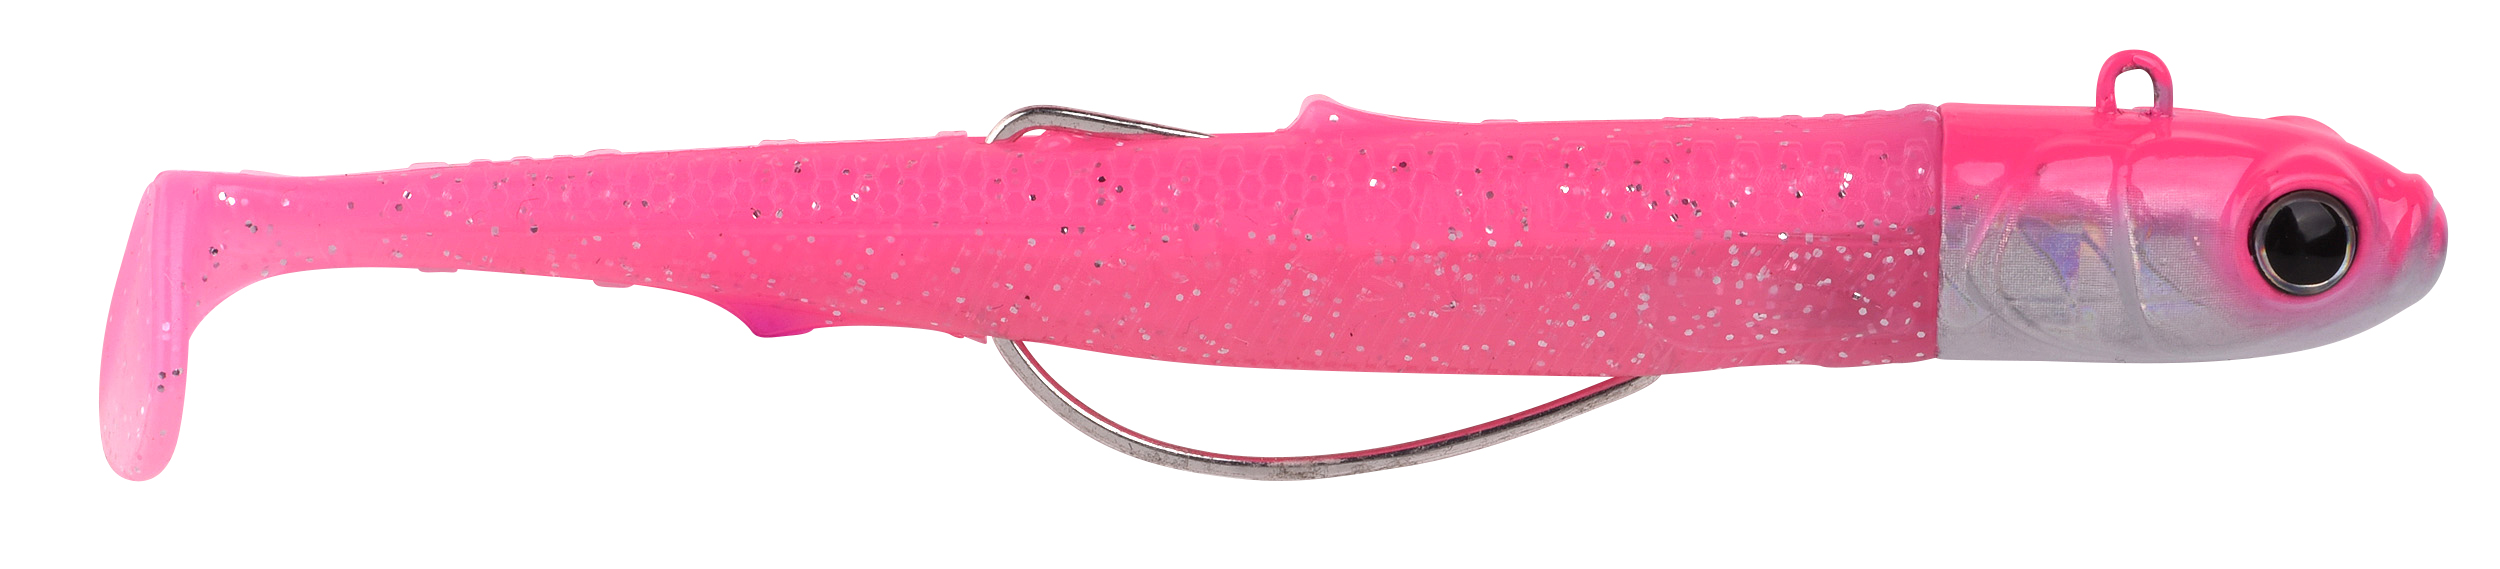 Spro Gutsbait Salt Meeres Softbait 8cm (15g) - Pink Minnow